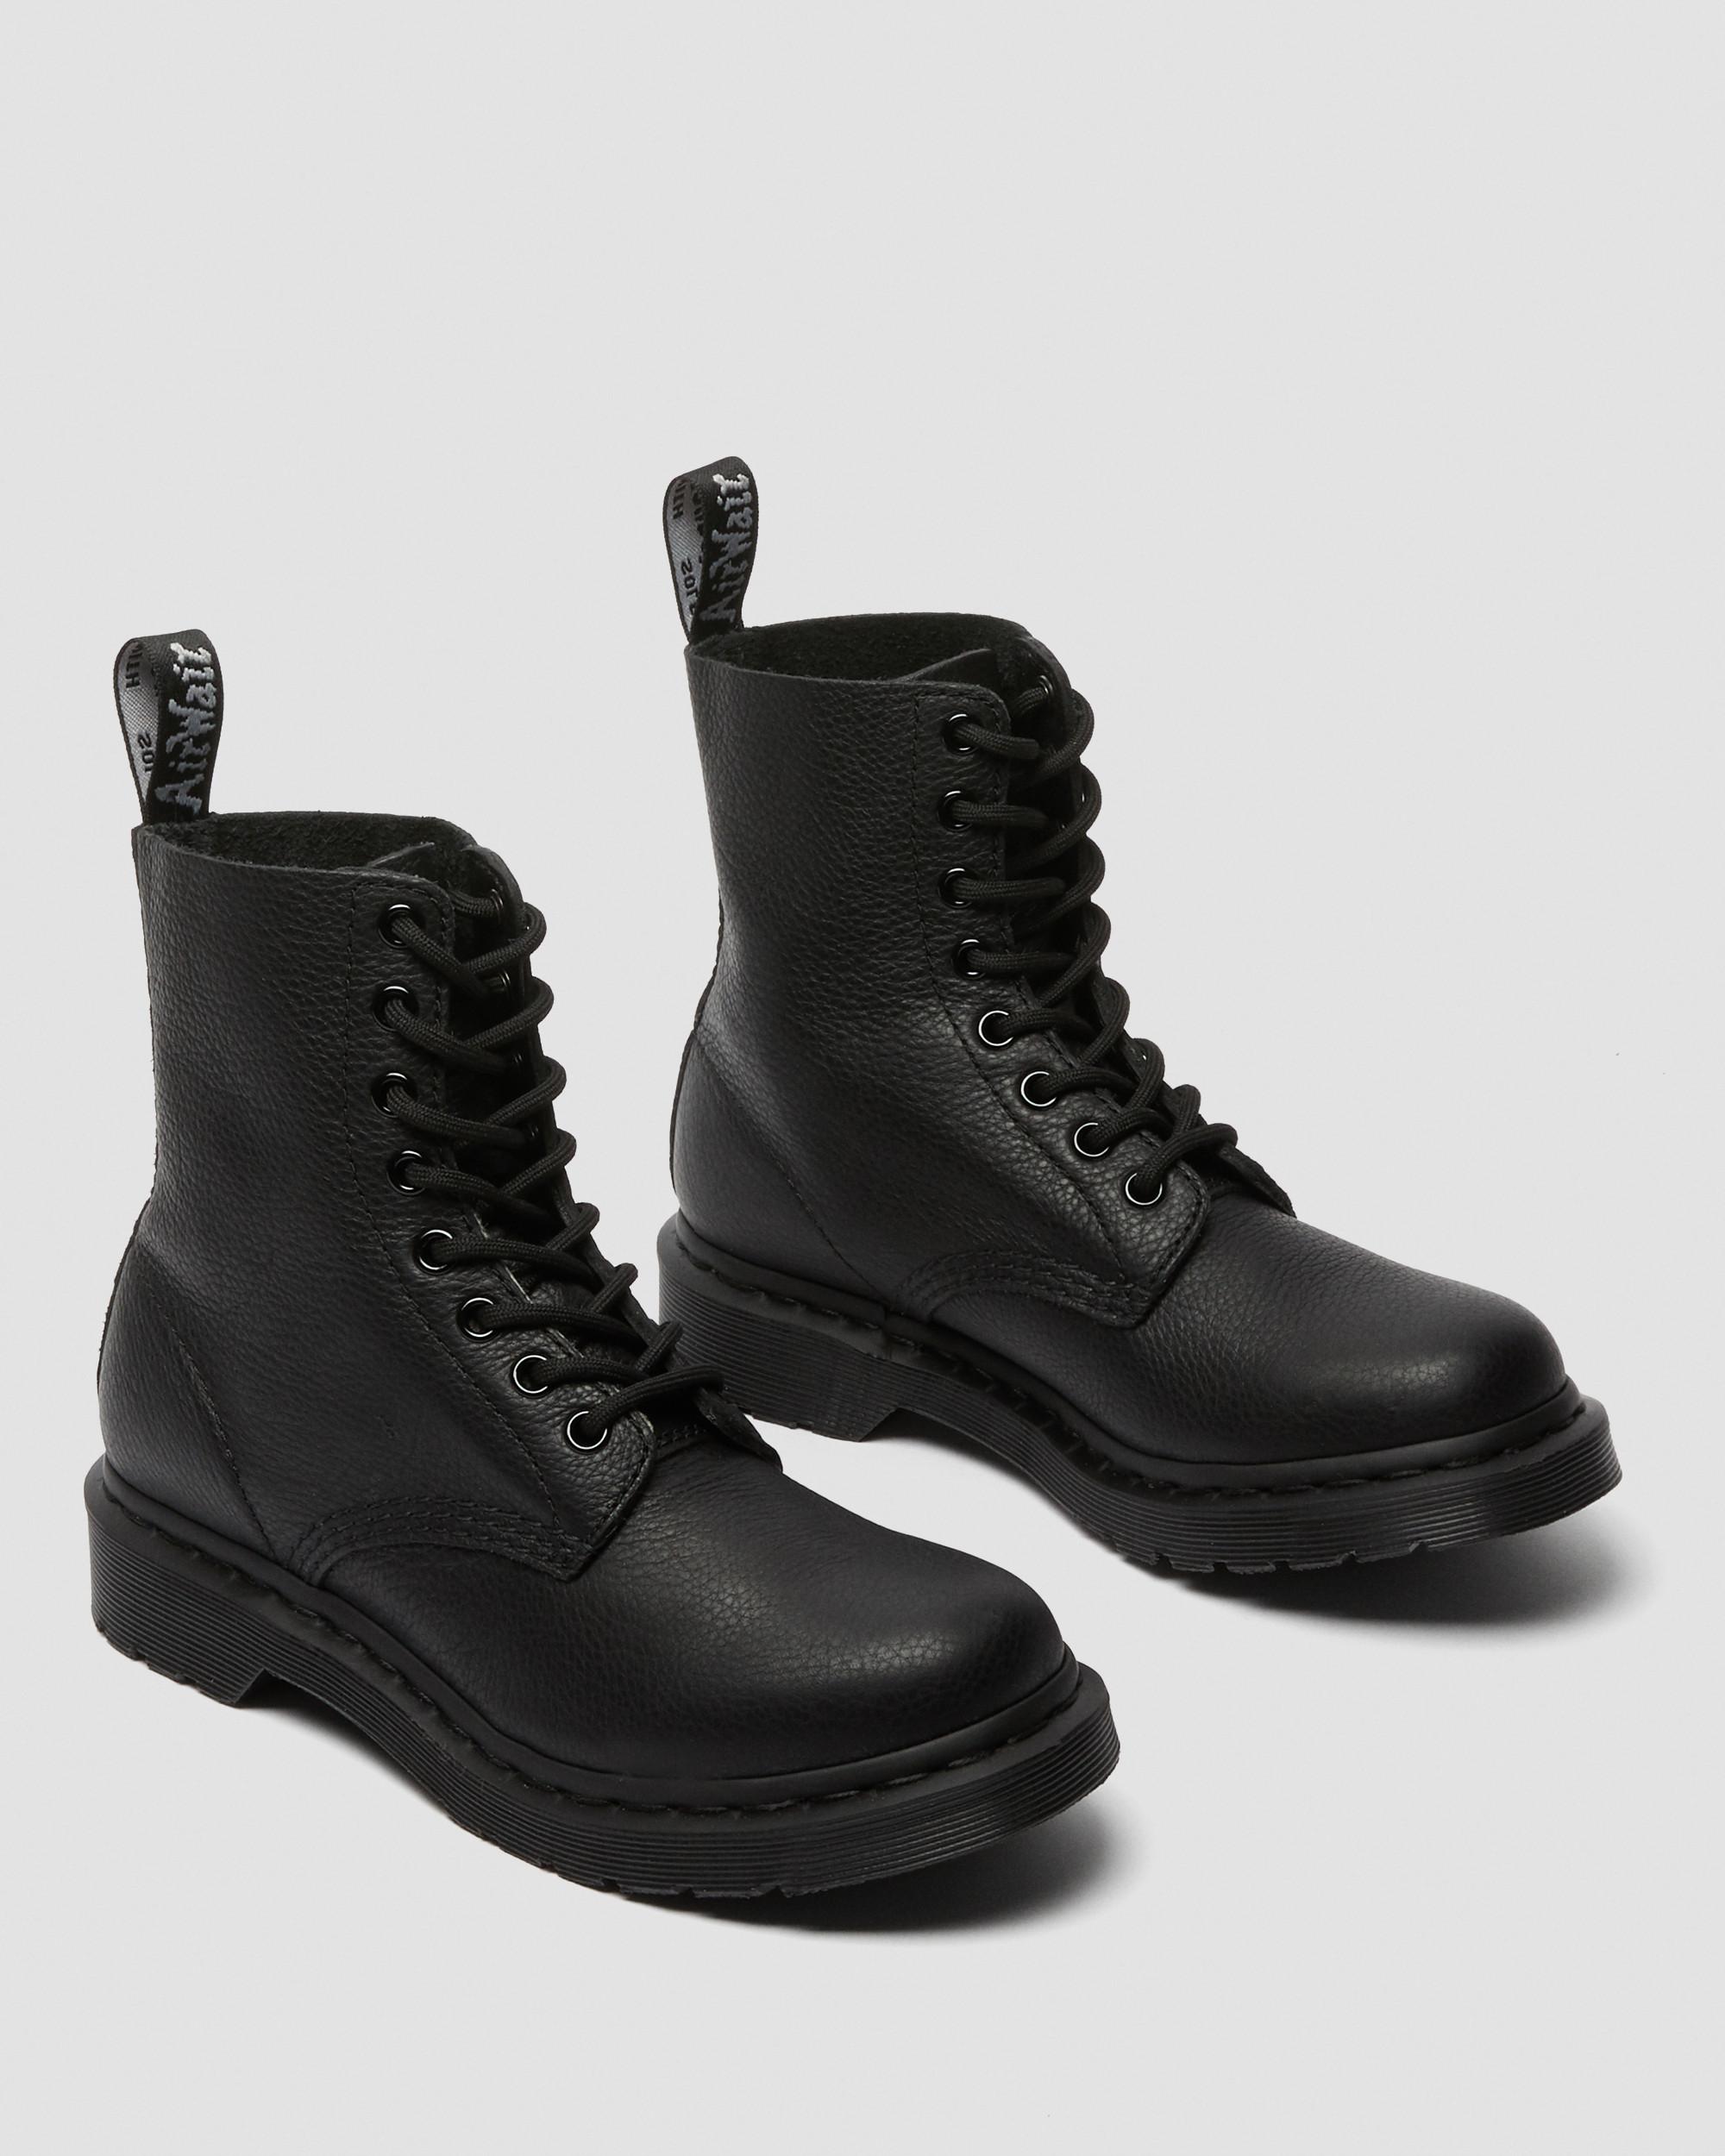 1460 Pascal Women's Mono Lace Up Boots, Black | Dr. Martens